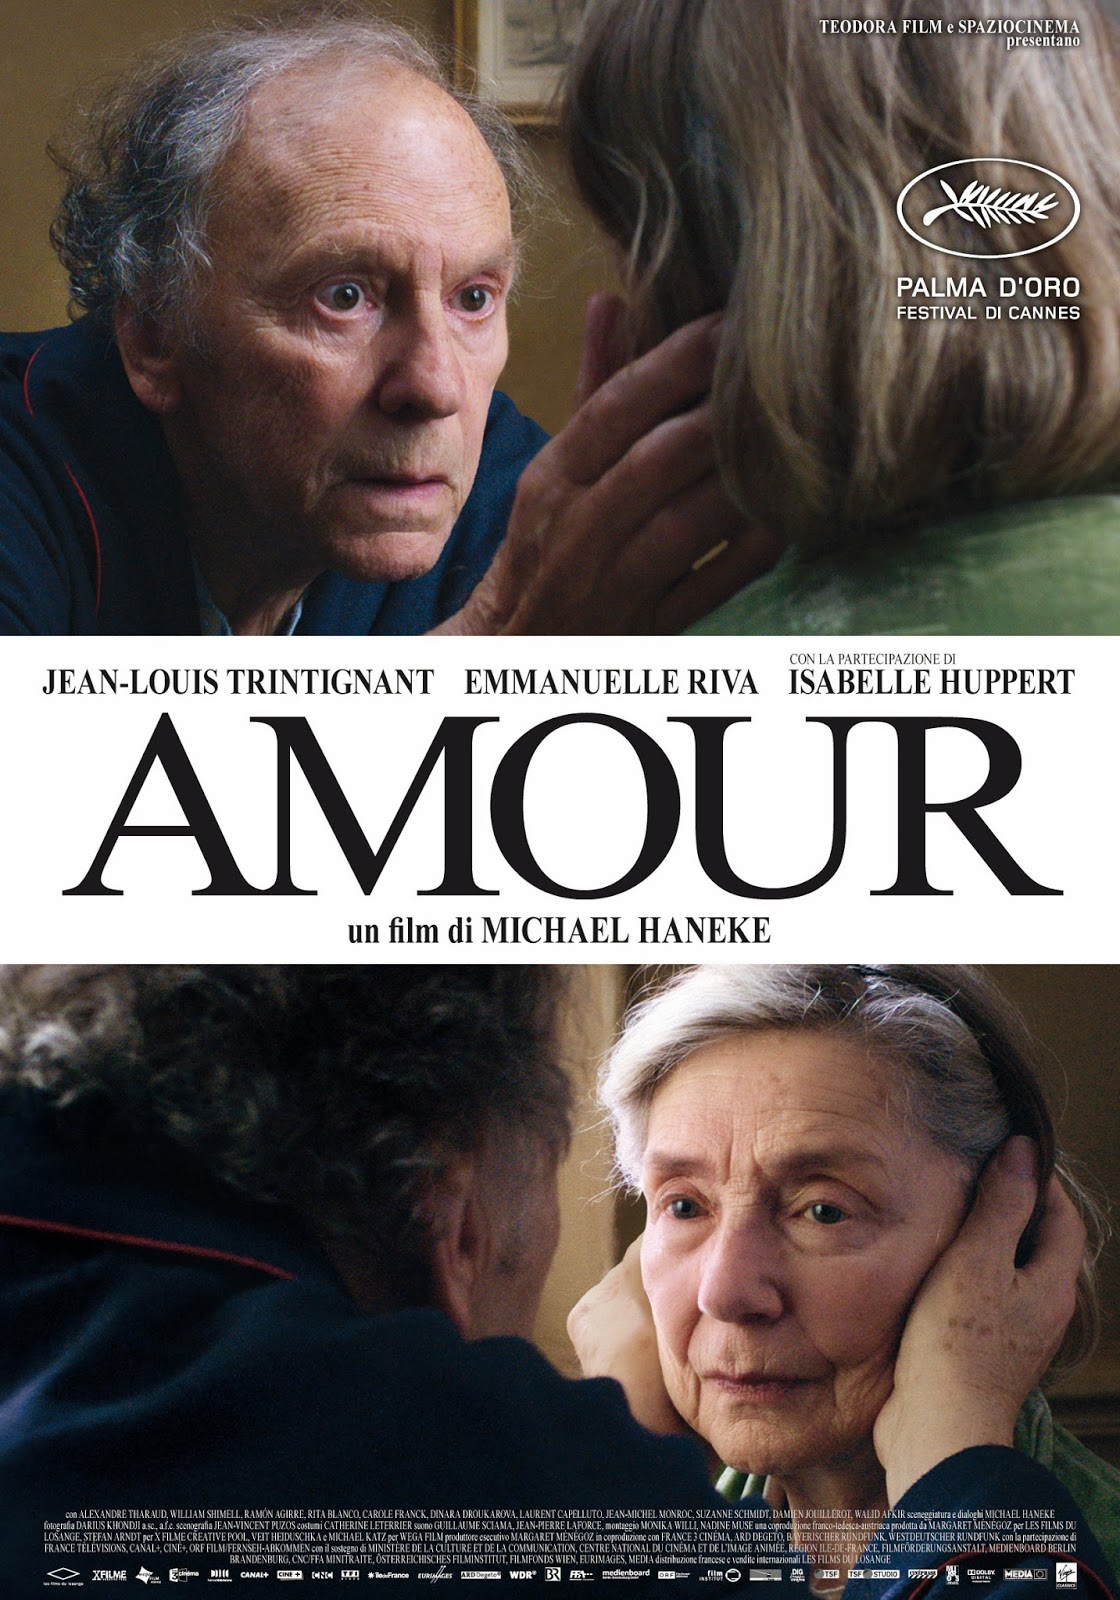 [ฝรั่ง] Amour (2012) รัก [1080p] [พากย์ฝรั่งเศส 5.1] [Soundtrack บรรยายไทย] [เสียงฝรั่งเศส + ซับไทย] [OPENLOAD]